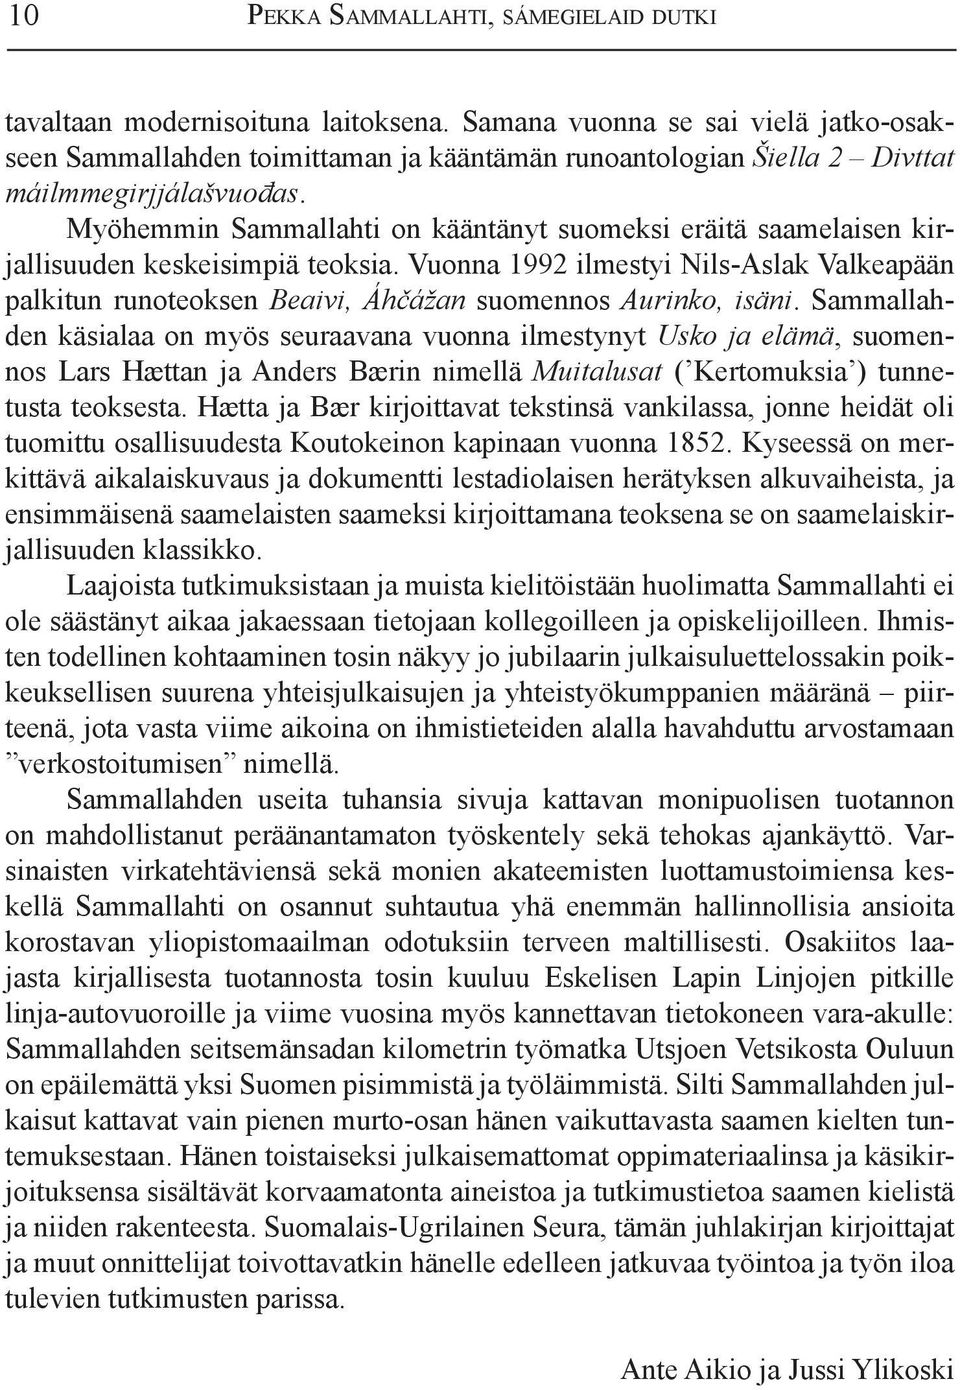 Myöhemmin Sammallahti on kääntänyt suomeksi eräitä saamelaisen kirjallisuuden keskeisimpiä teoksia.